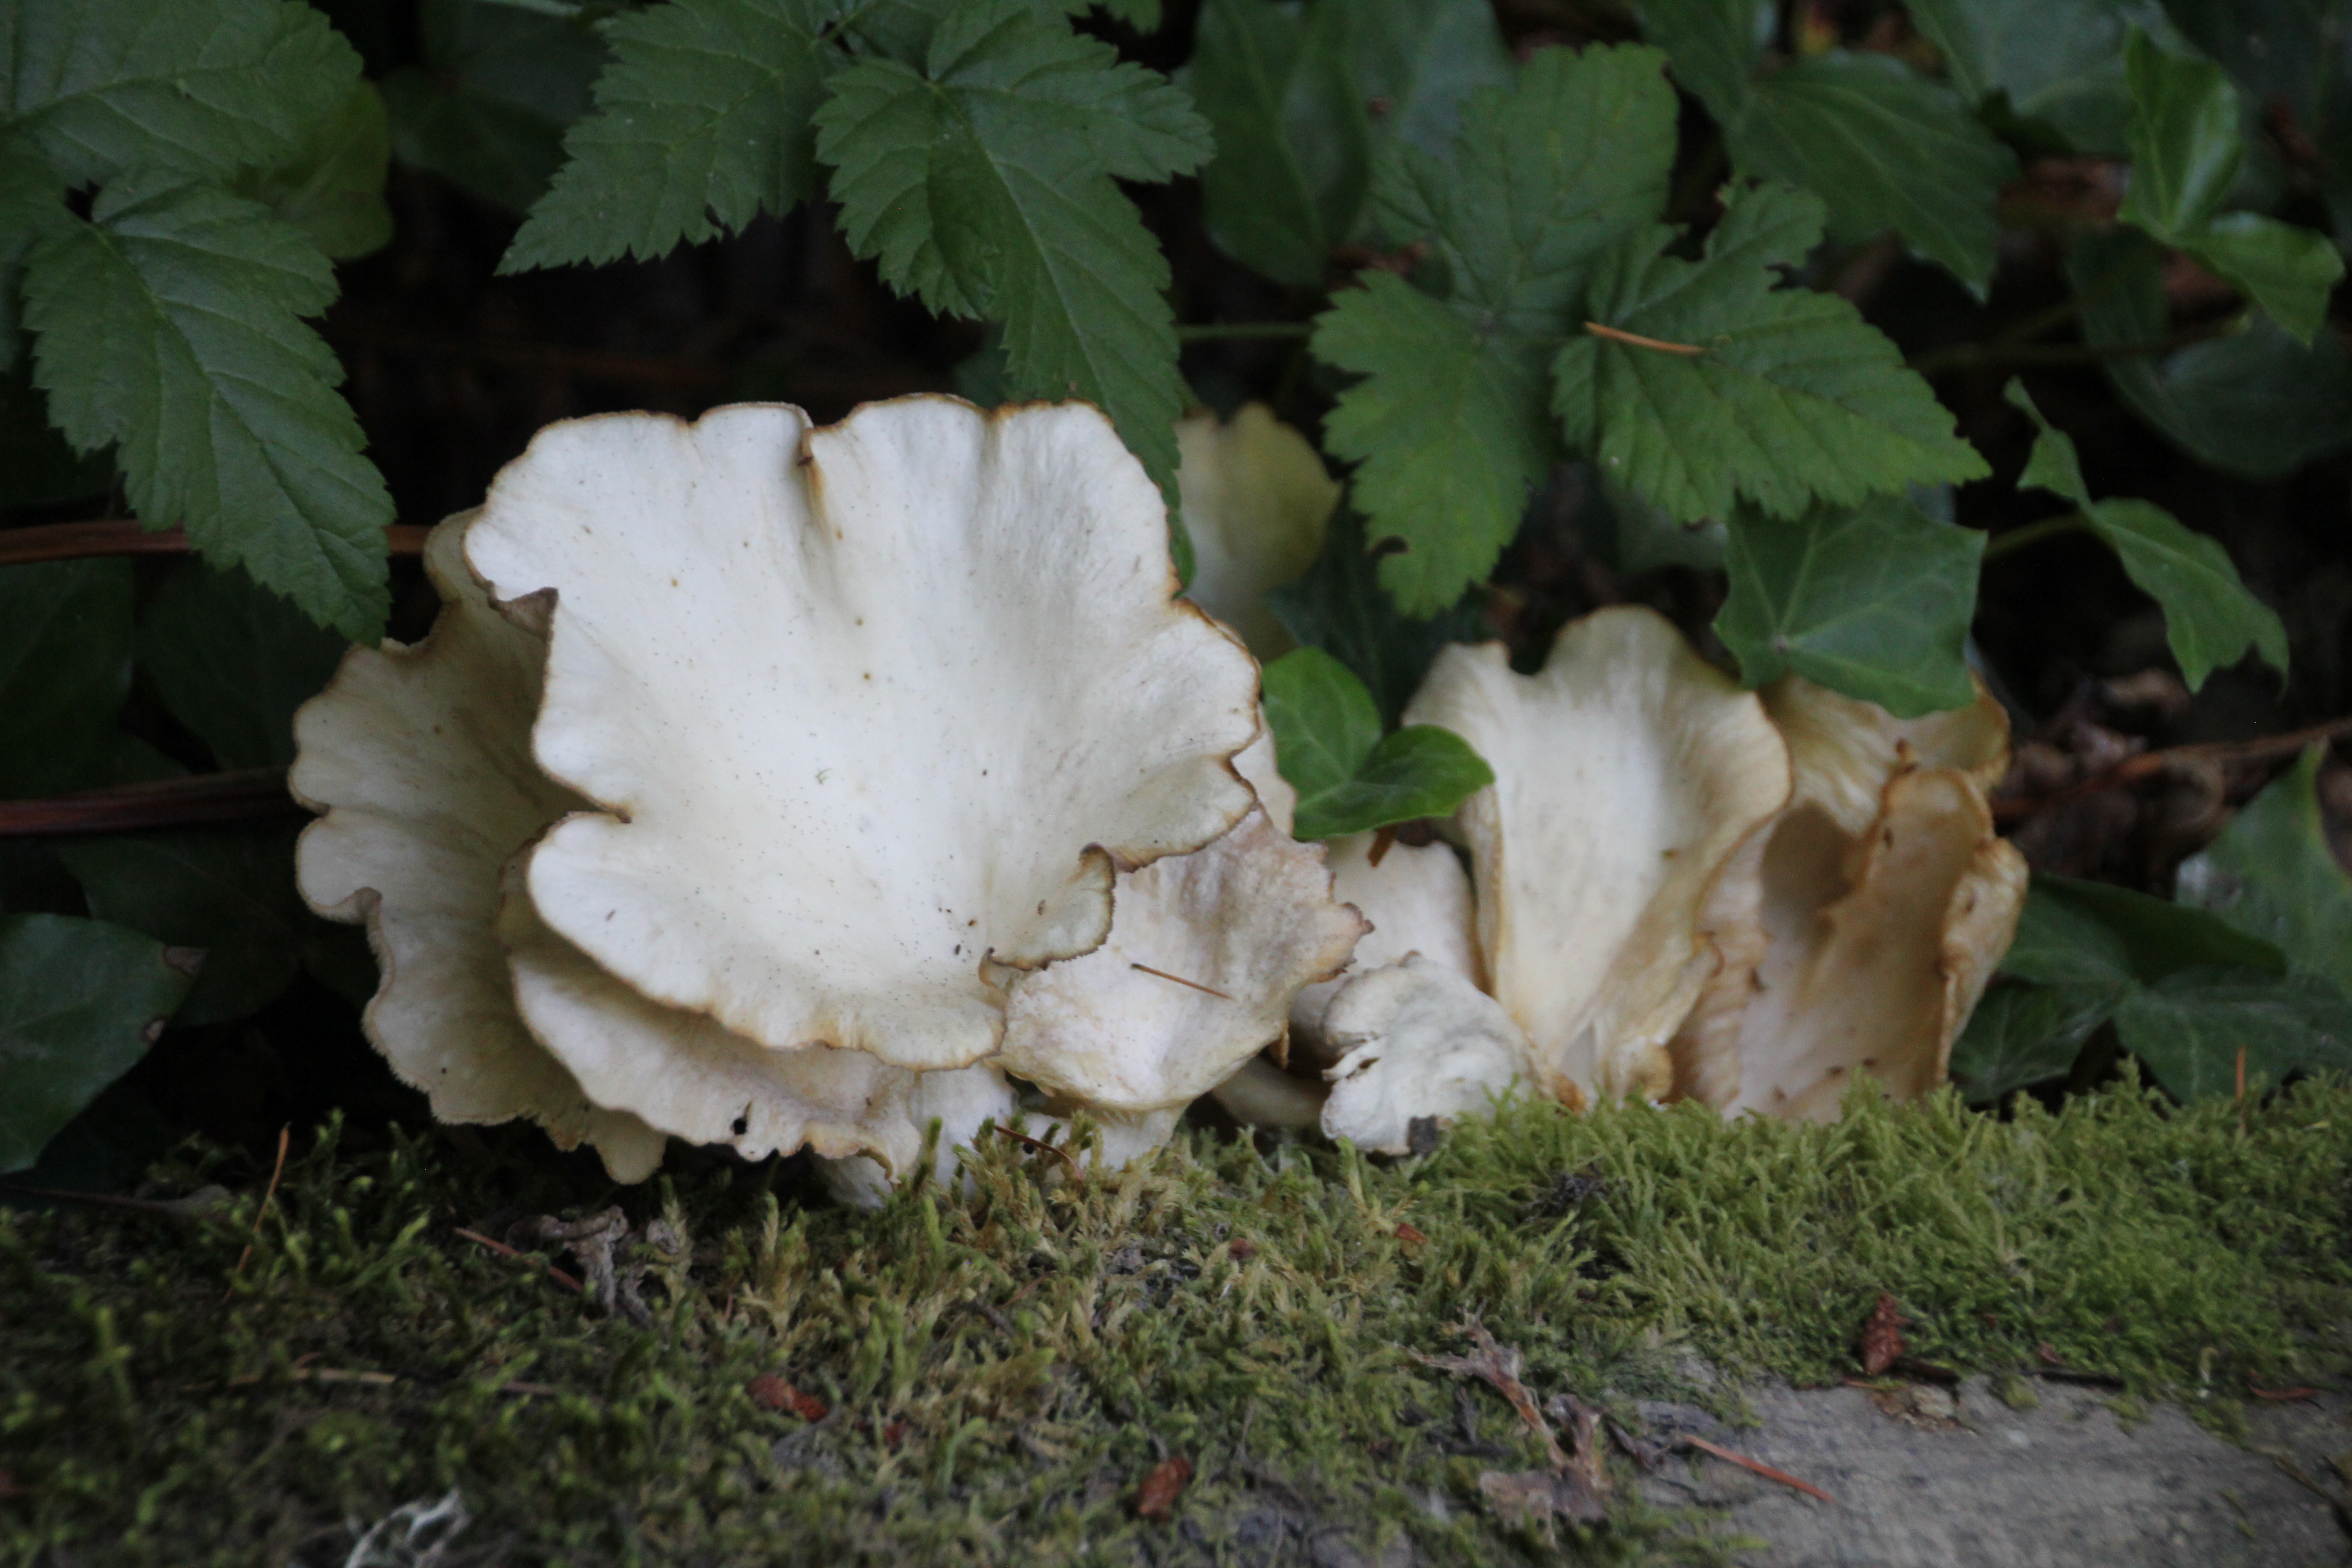 Mushrooms in Undergrowth